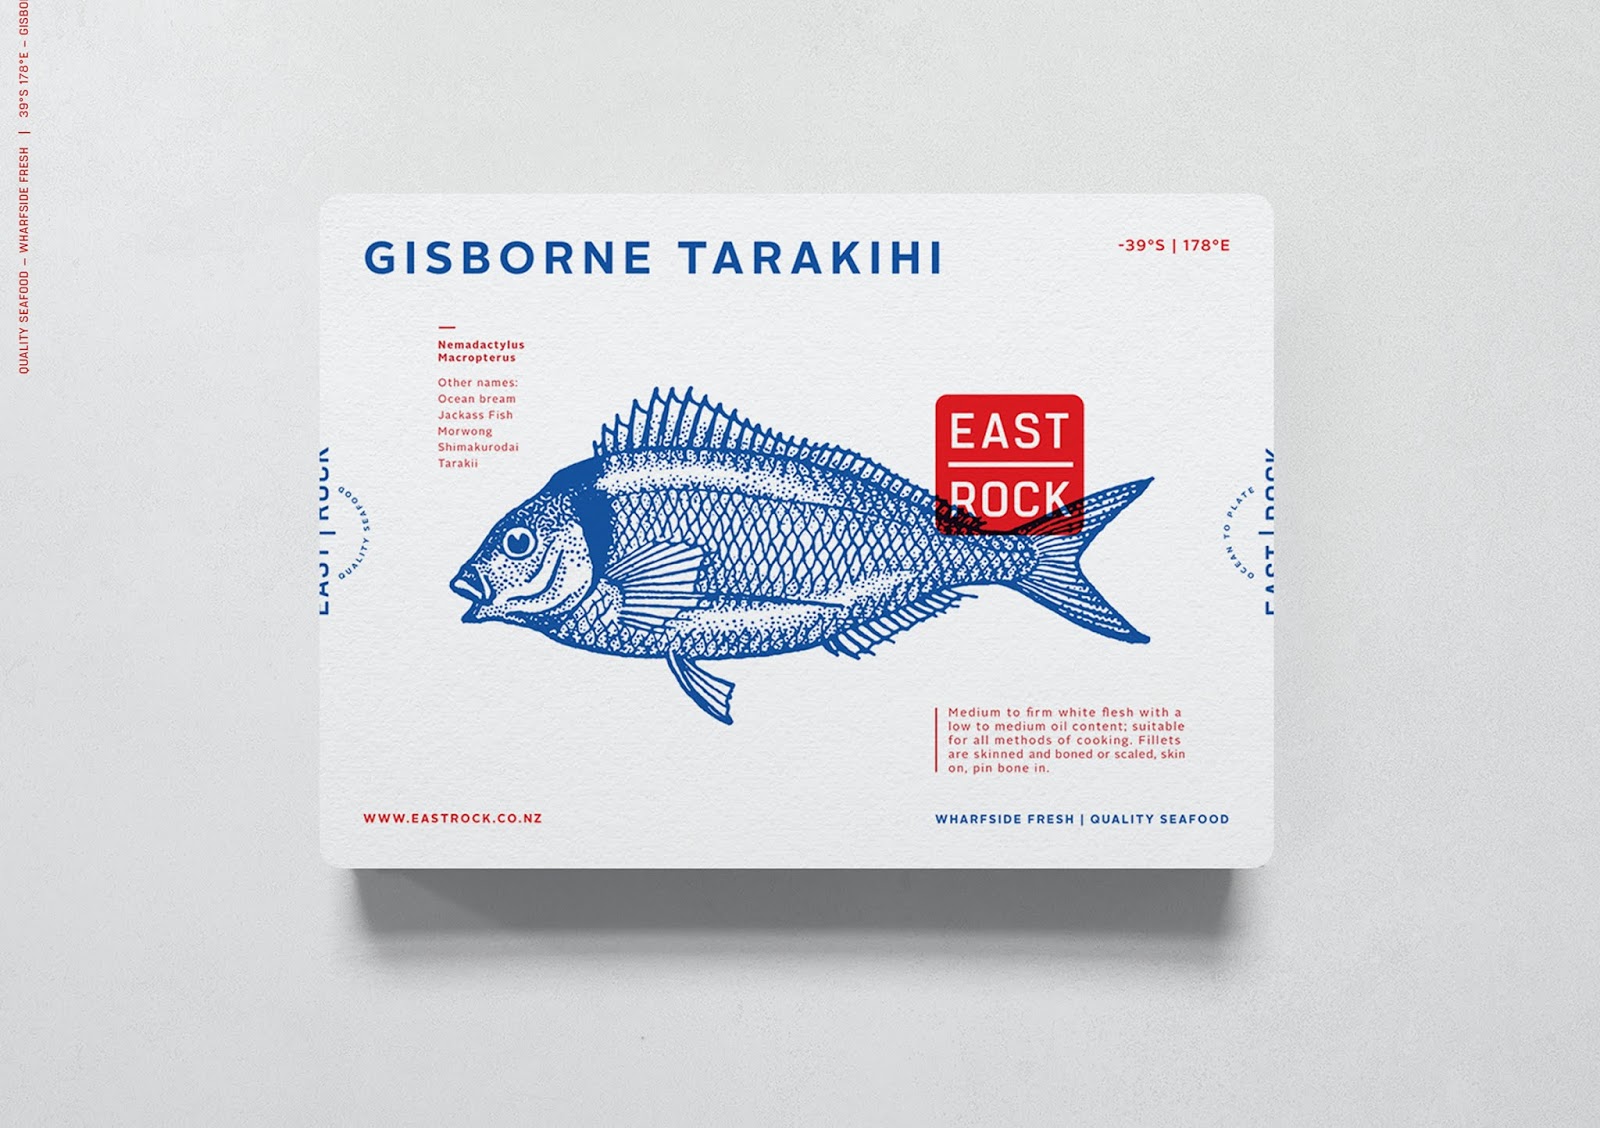 海鲜食品包装西安四喜品牌包装设计